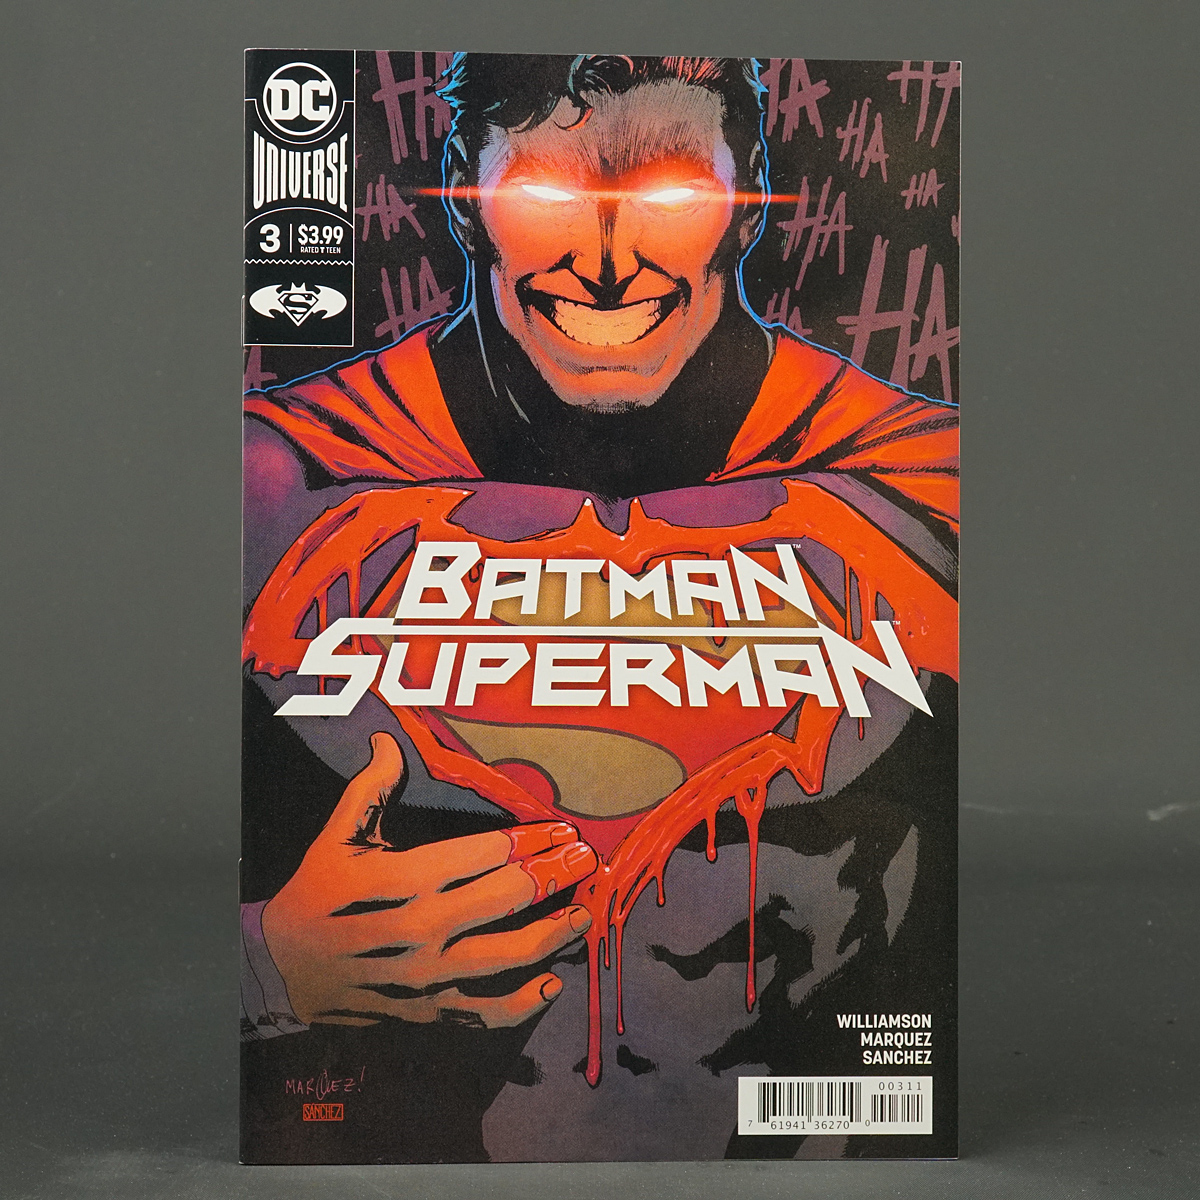 BATMAN SUPERMAN #3 DC Comics 2019 (A/CA) Marquez (W) Williamson 230915A